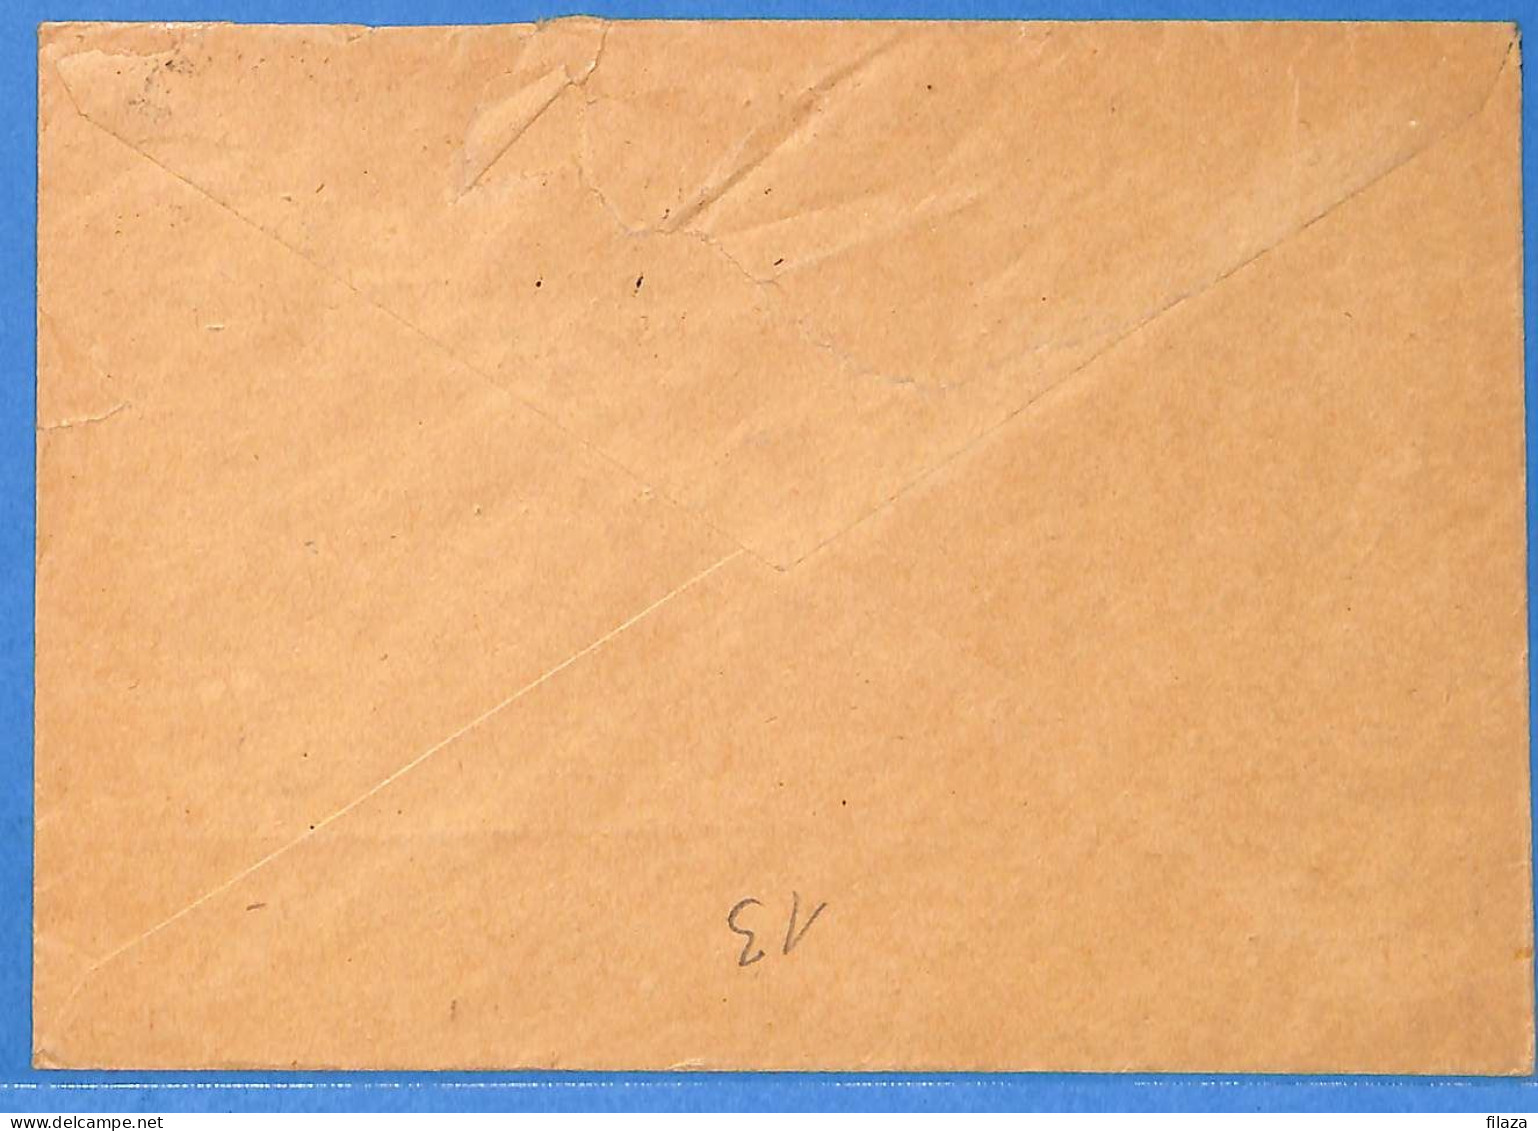 Saar - 1953 - Lettre De Sankt Ingbert - G31835 - Covers & Documents